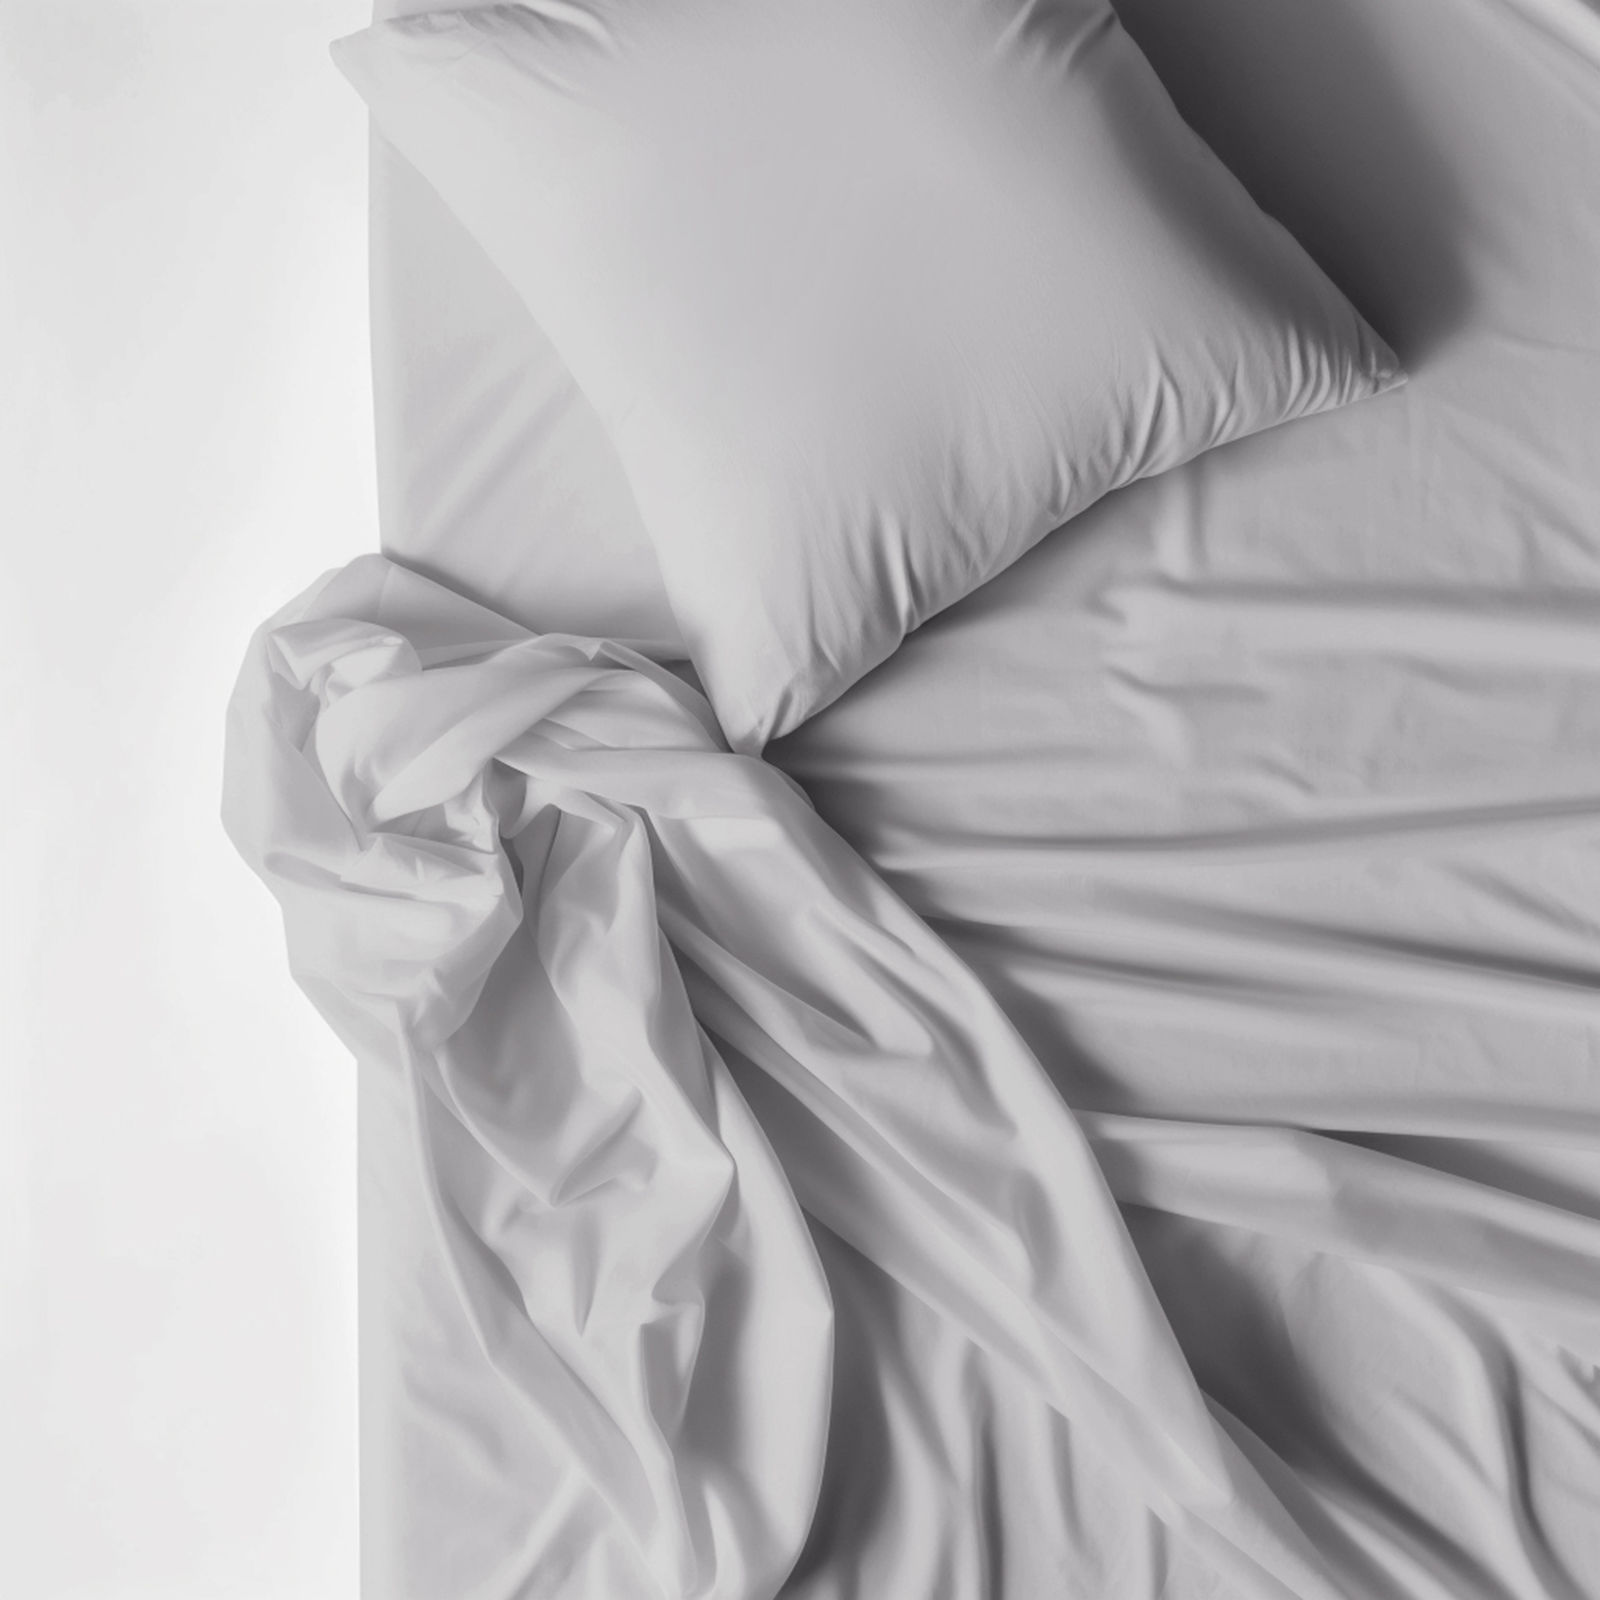 Bavlnené posteľné obliečky - svetlo sivé